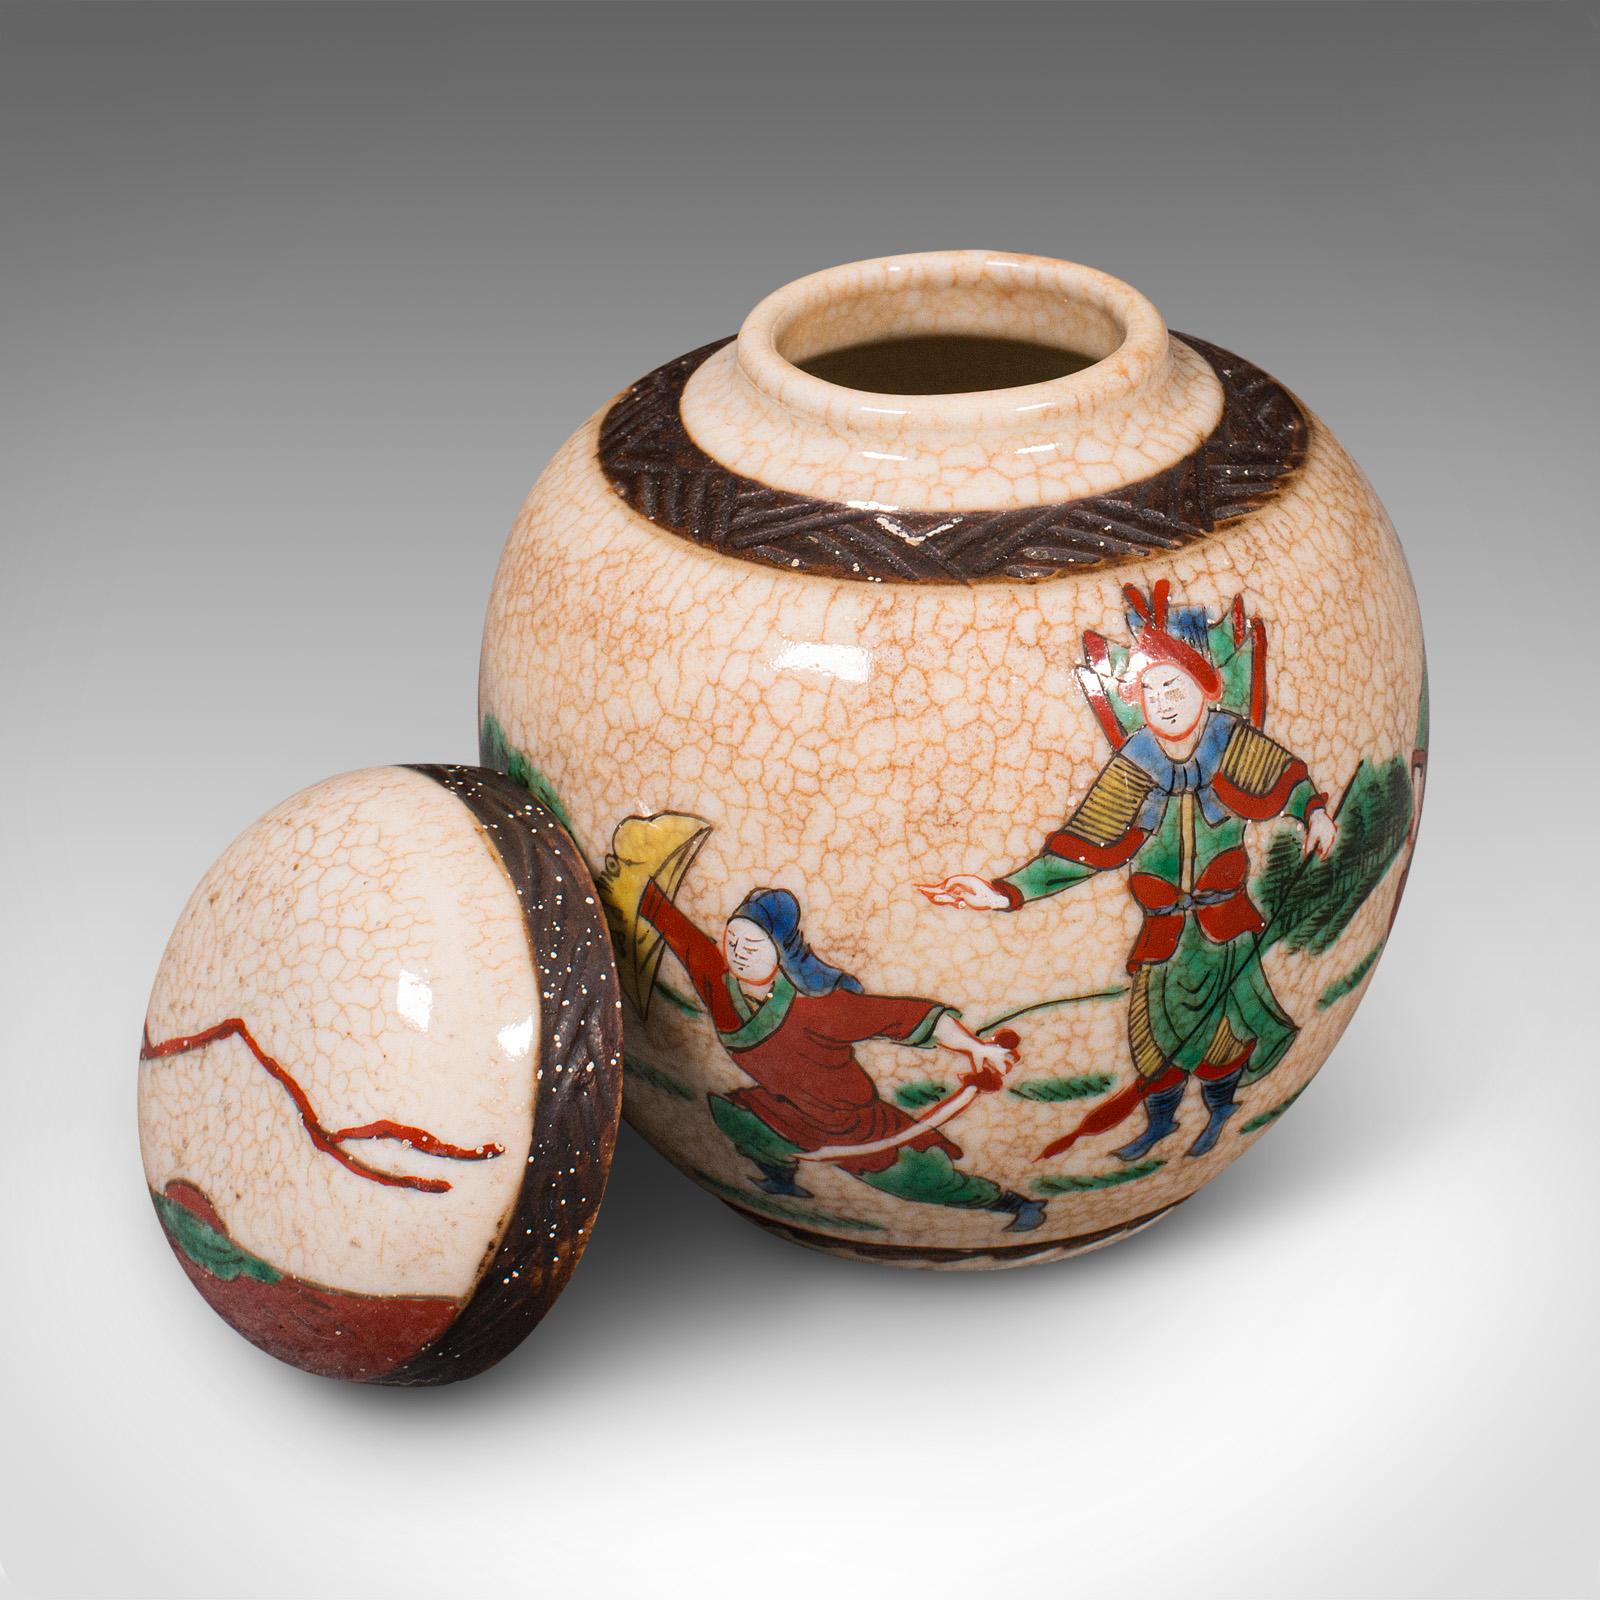 Dies ist ein kleines antikes Gewürzglas. Japanische Zierkanne aus Keramik aus der späten viktorianischen Zeit, um 1900.

Ansprechendes traditionelles Dekor mit fröhlichen Farben
Mit wünschenswerter Alterspatina und in gutem Zustand
Cremefarbene